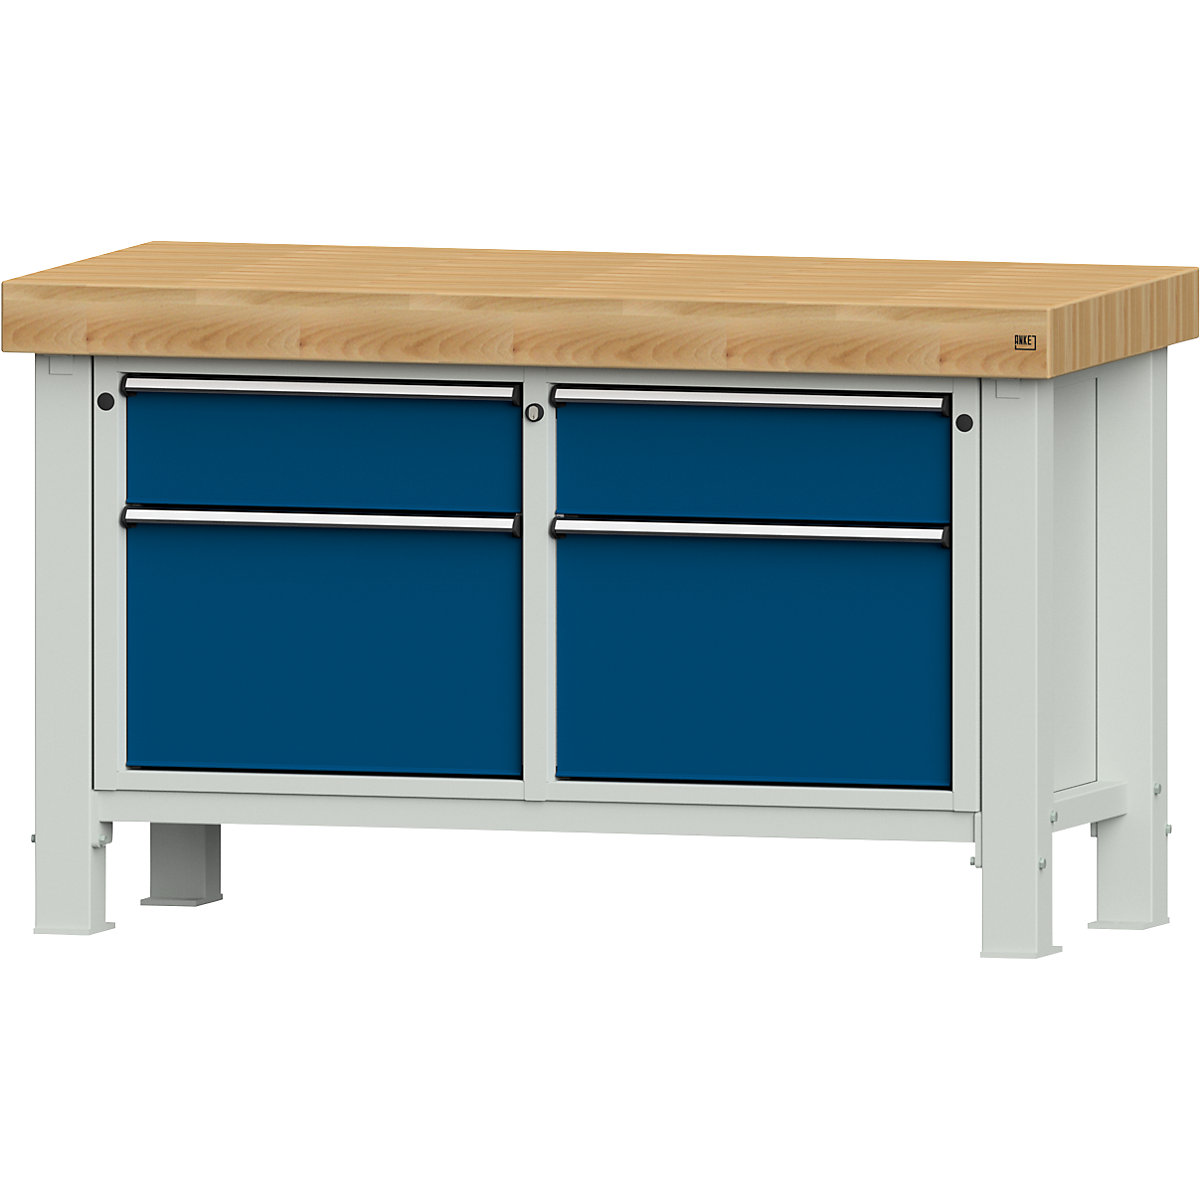 ANKE – Radni stol za teške terete, širina ploče 1500 mm, s 2 ladice i 2 krilna vrata, debljina ploče 100 mm